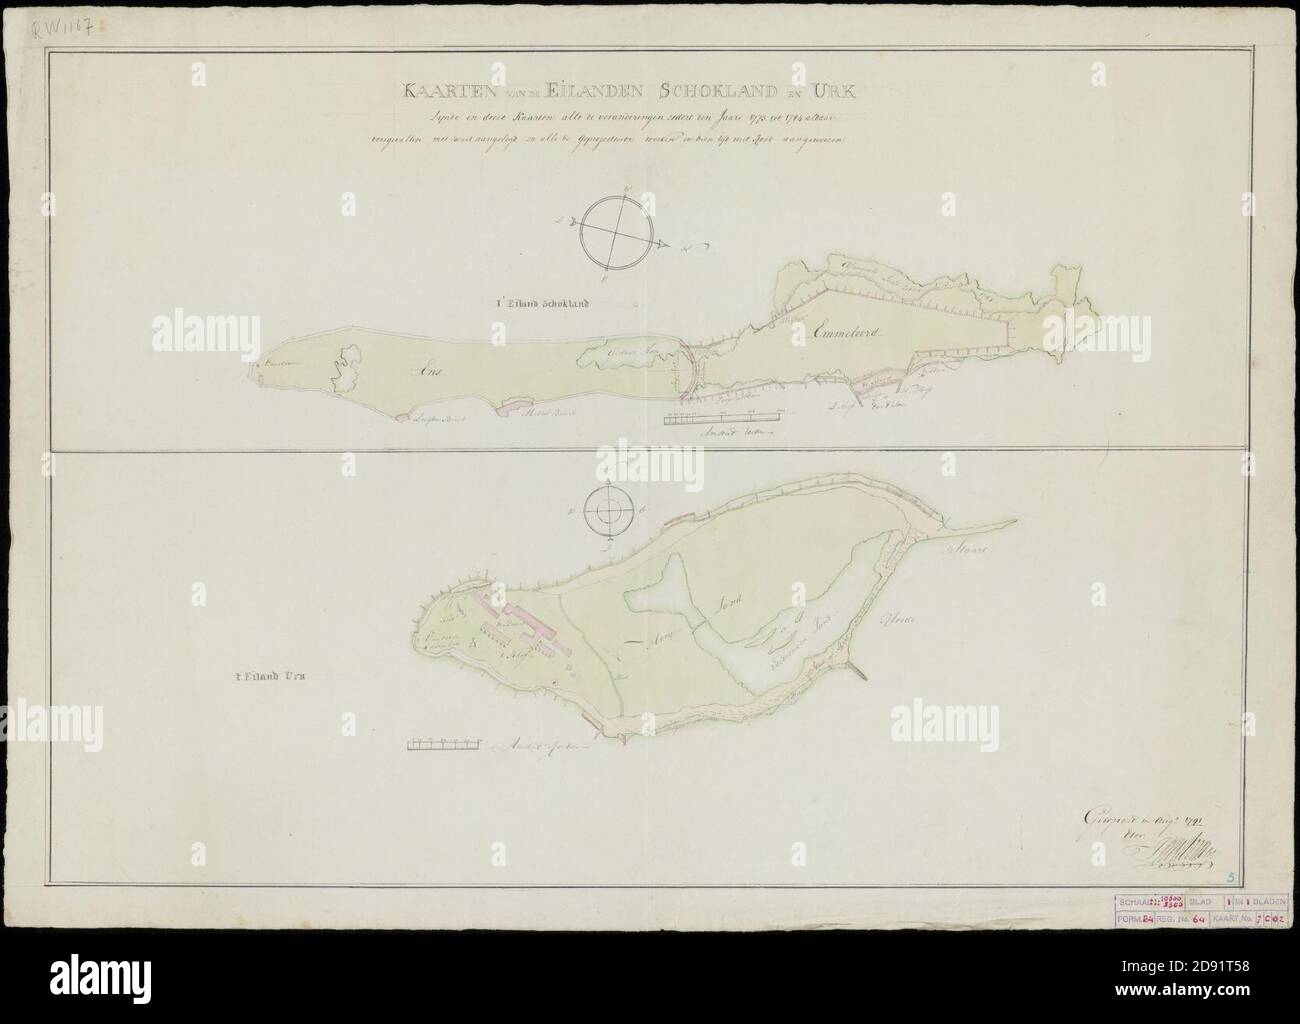 Kaarten van de eilanden Schokland en Urk Kaartbeeld 1784. (.) Zijnde in deese kaarten alle de veranderingen zedert den jaare 1773 tot 1784 aldaar voorgevallen met zwart aangelegt en alle d, Stockfoto